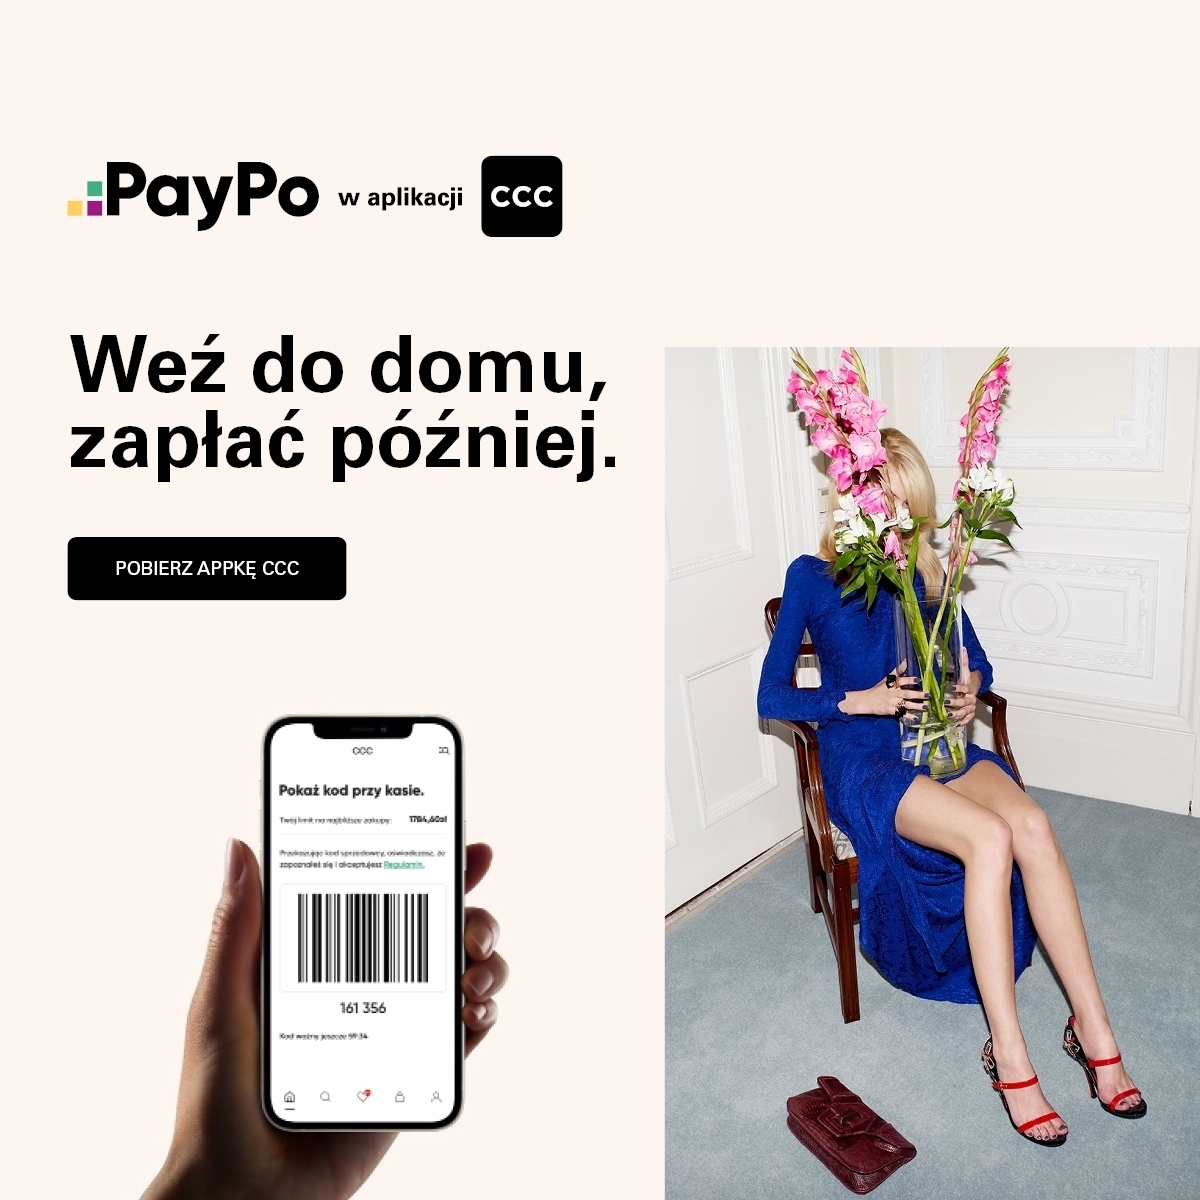 , PayPo w aplikacji CCC!